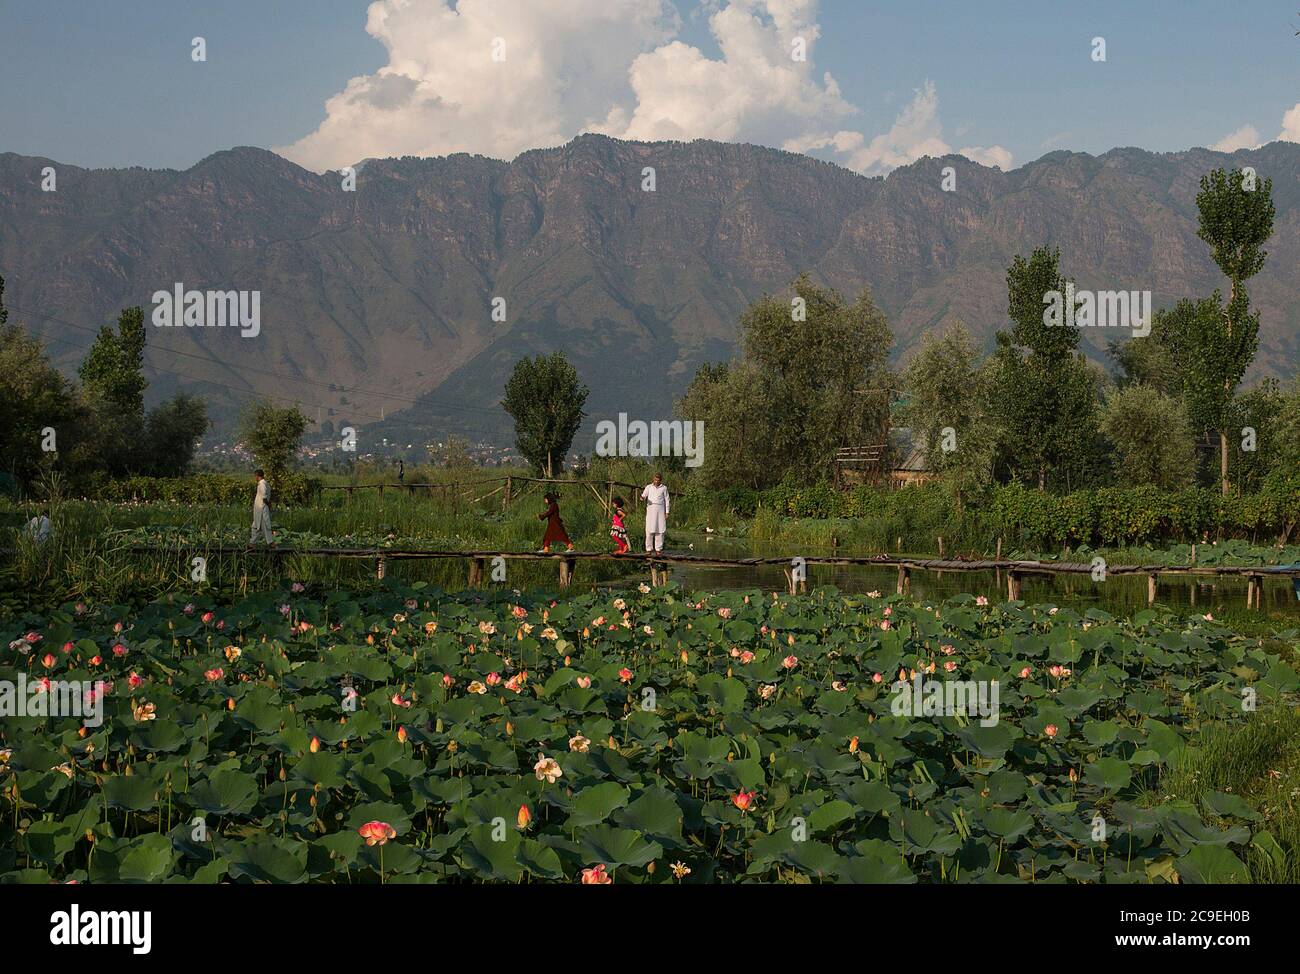 Srinagar, indisch kontrolliertes Kaschmir. Juli 2020. Die Menschen verbringen Zeit auf einer Fußgängerbrücke in einem Lotusteich am Dal Lake in der Stadt Srinagar, der Sommerhauptstadt des von Indien kontrollierten Kaschmir, 30. Juli 2020. Quelle: Javed Dar/Xinhua/Alamy Live News Stockfoto